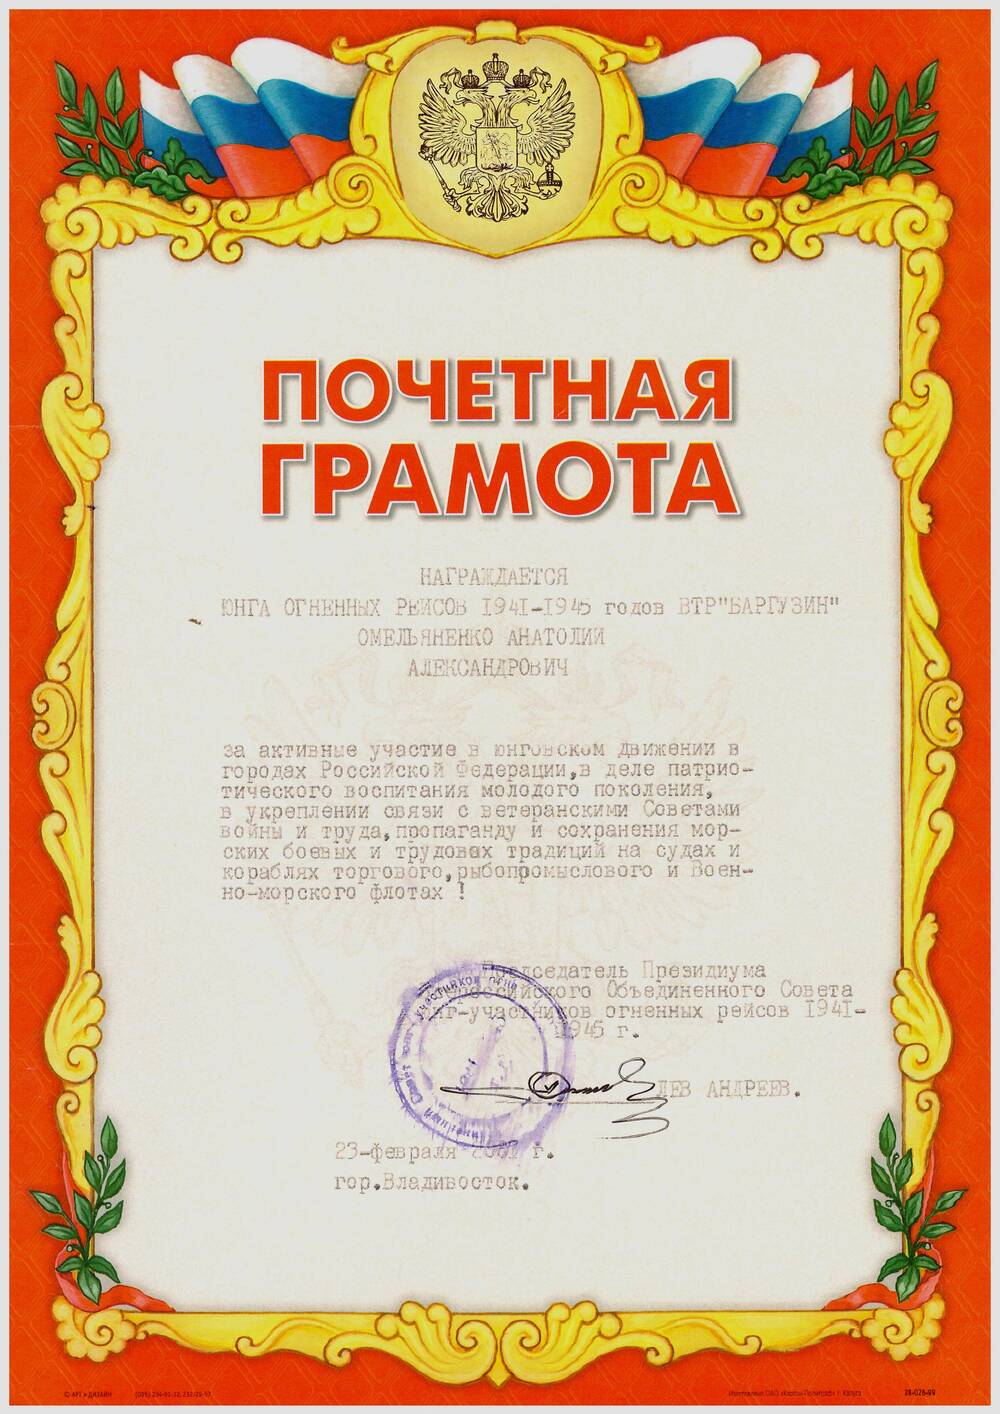 Почетная грамота от Совета юнг огненных рейсов ветерану войны Омельяненко А.А.